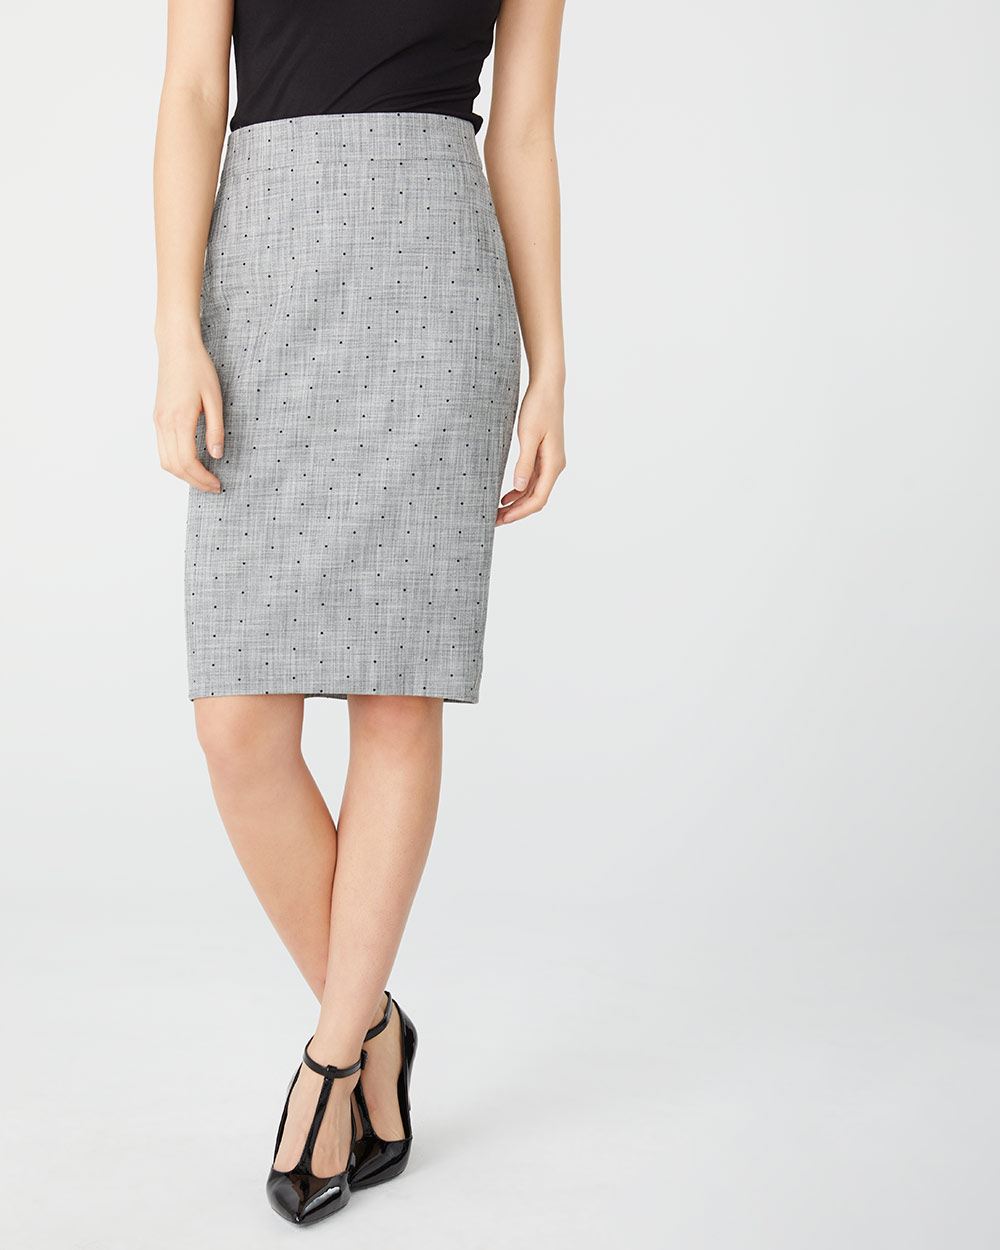 High-waist crosshatch dot pencil skirt | RW&CO.